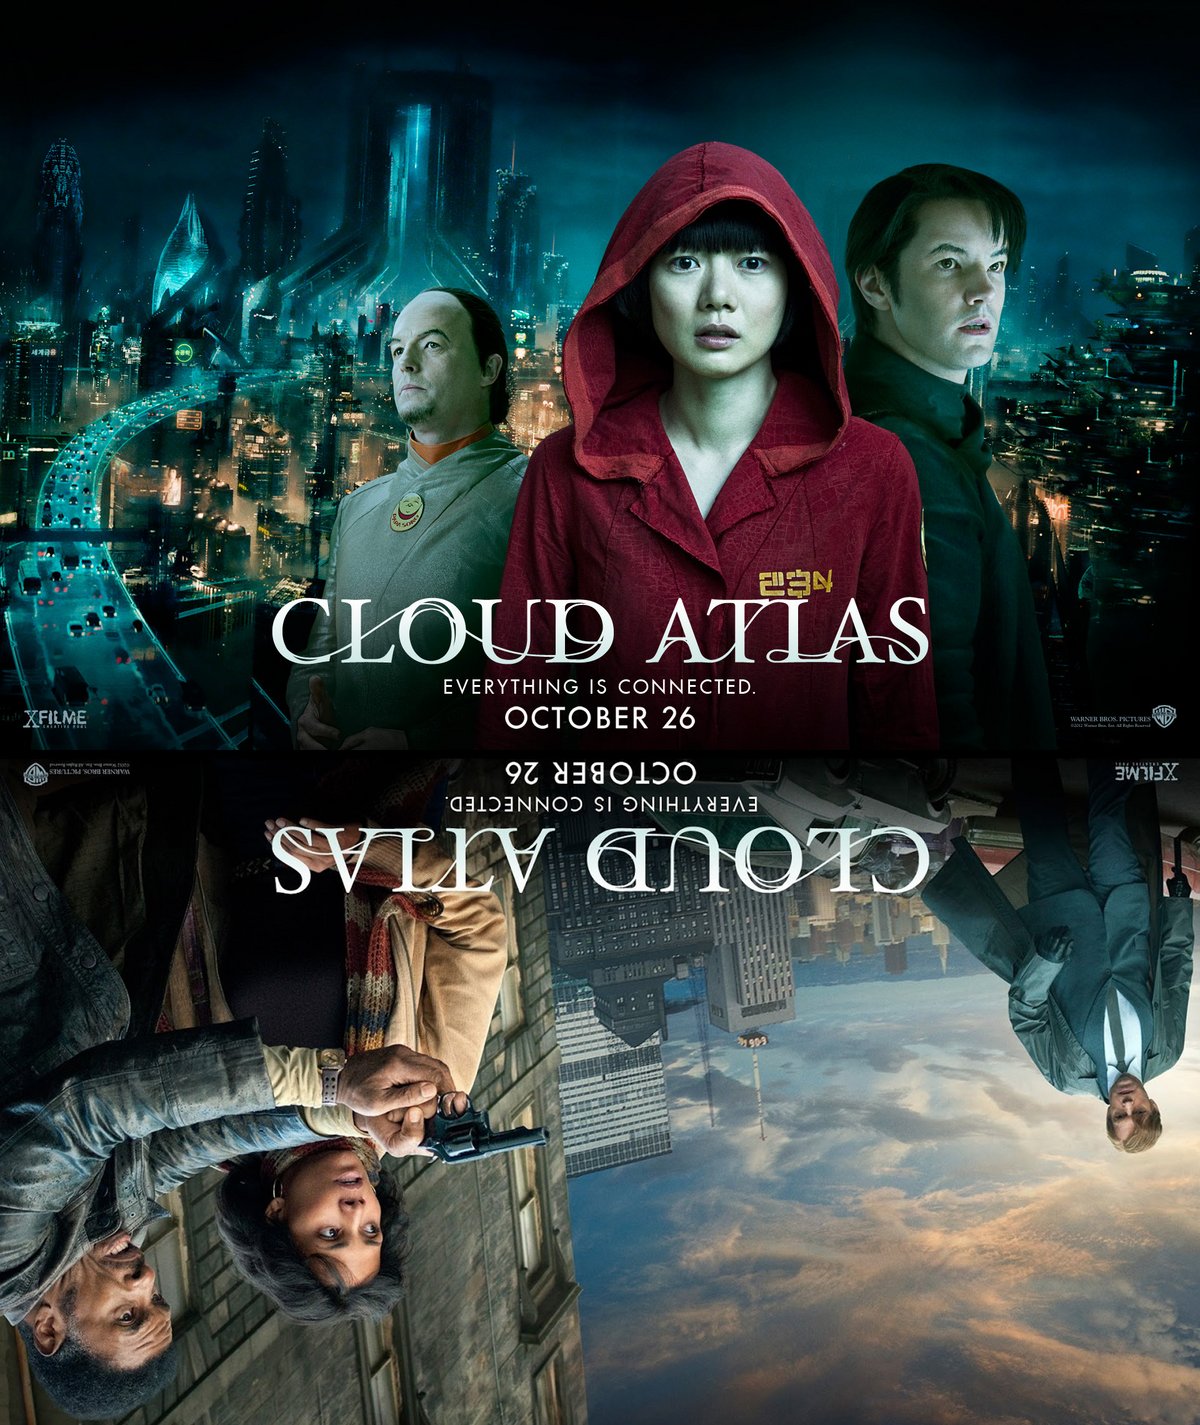 SF film #1 Cloud Atlas